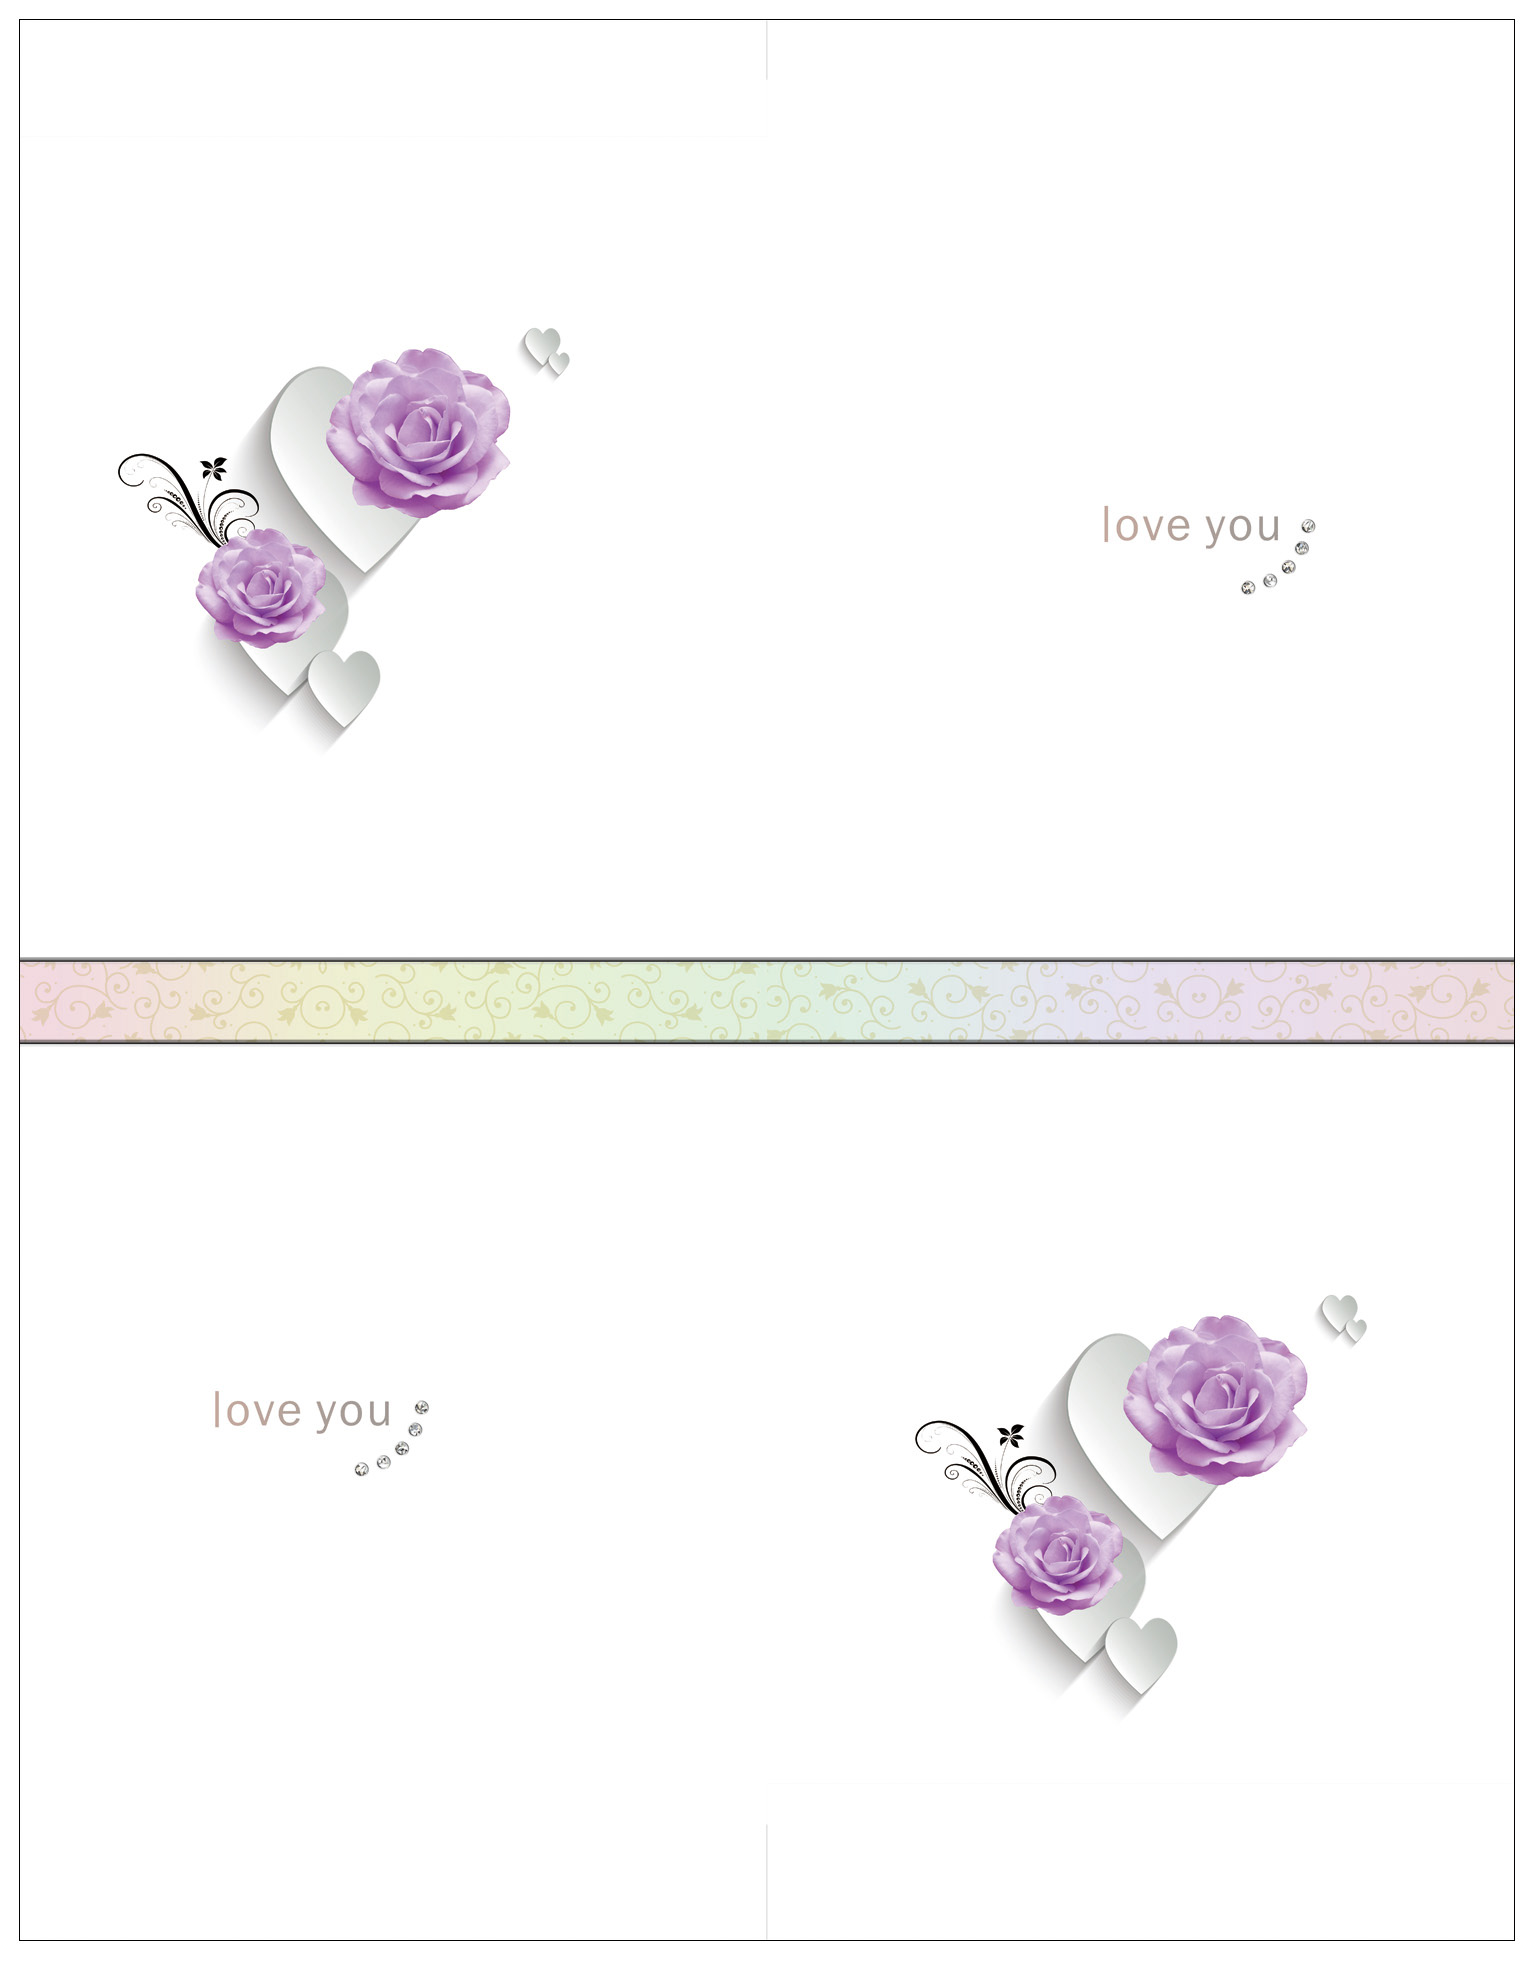 玫瑰  紫色玫瑰花 loveyou B-MYJ-2069  免雕高光